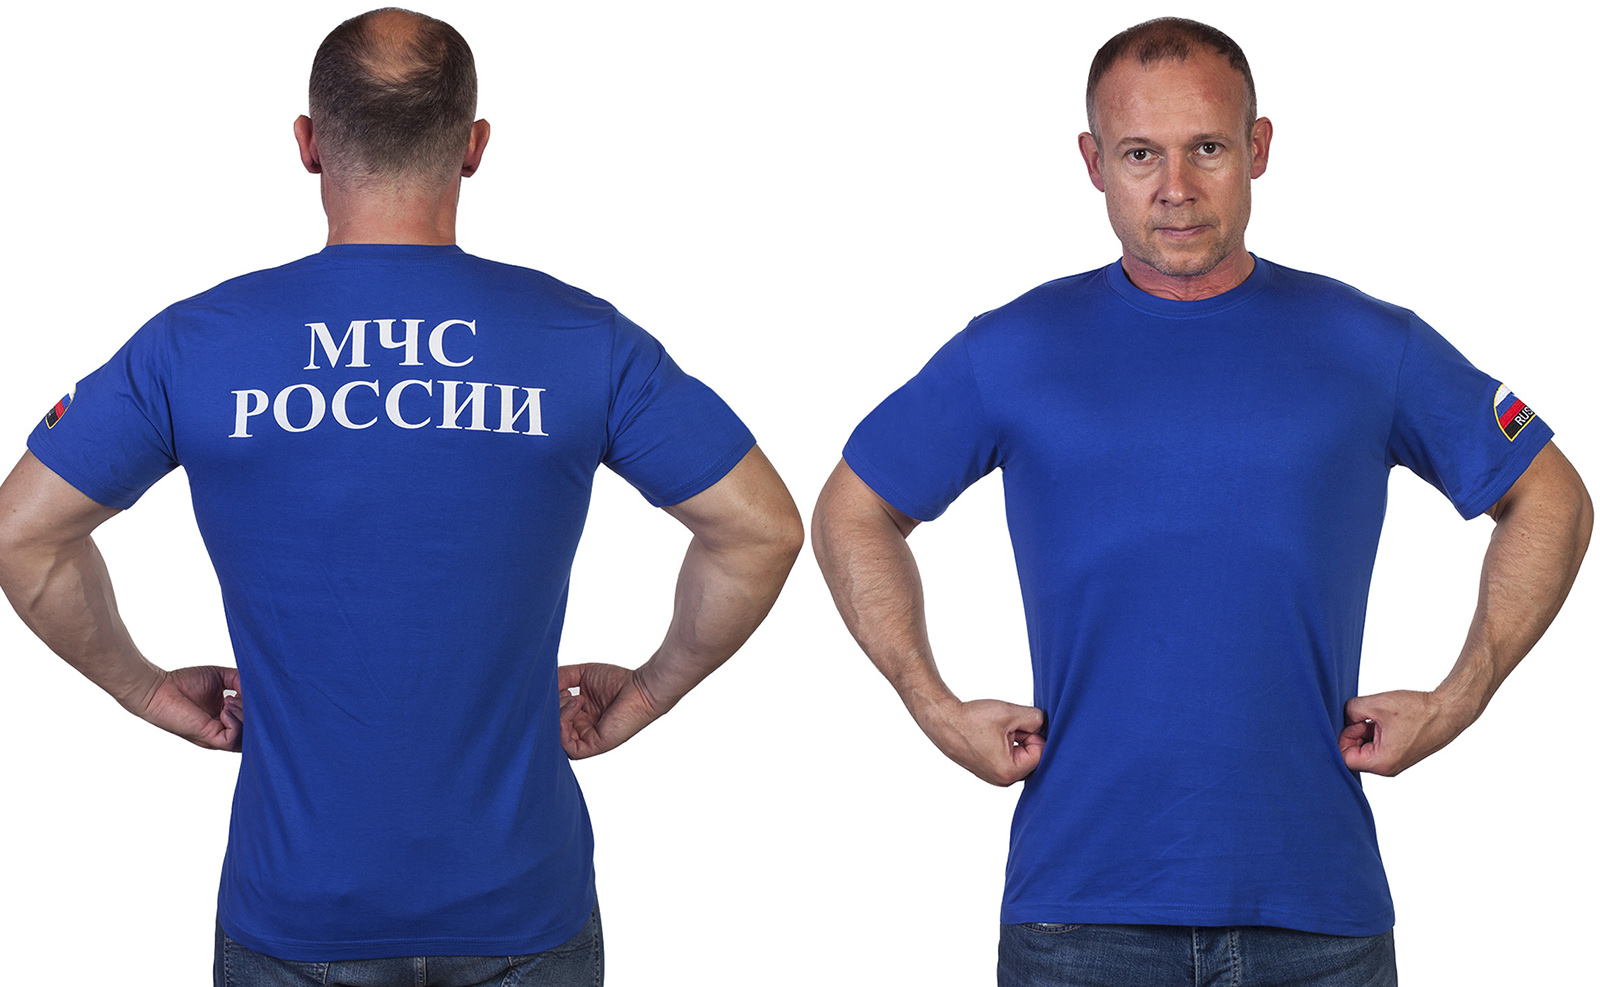 Купить оригинальную футболку с вышивкой МЧС России в подарок мужу